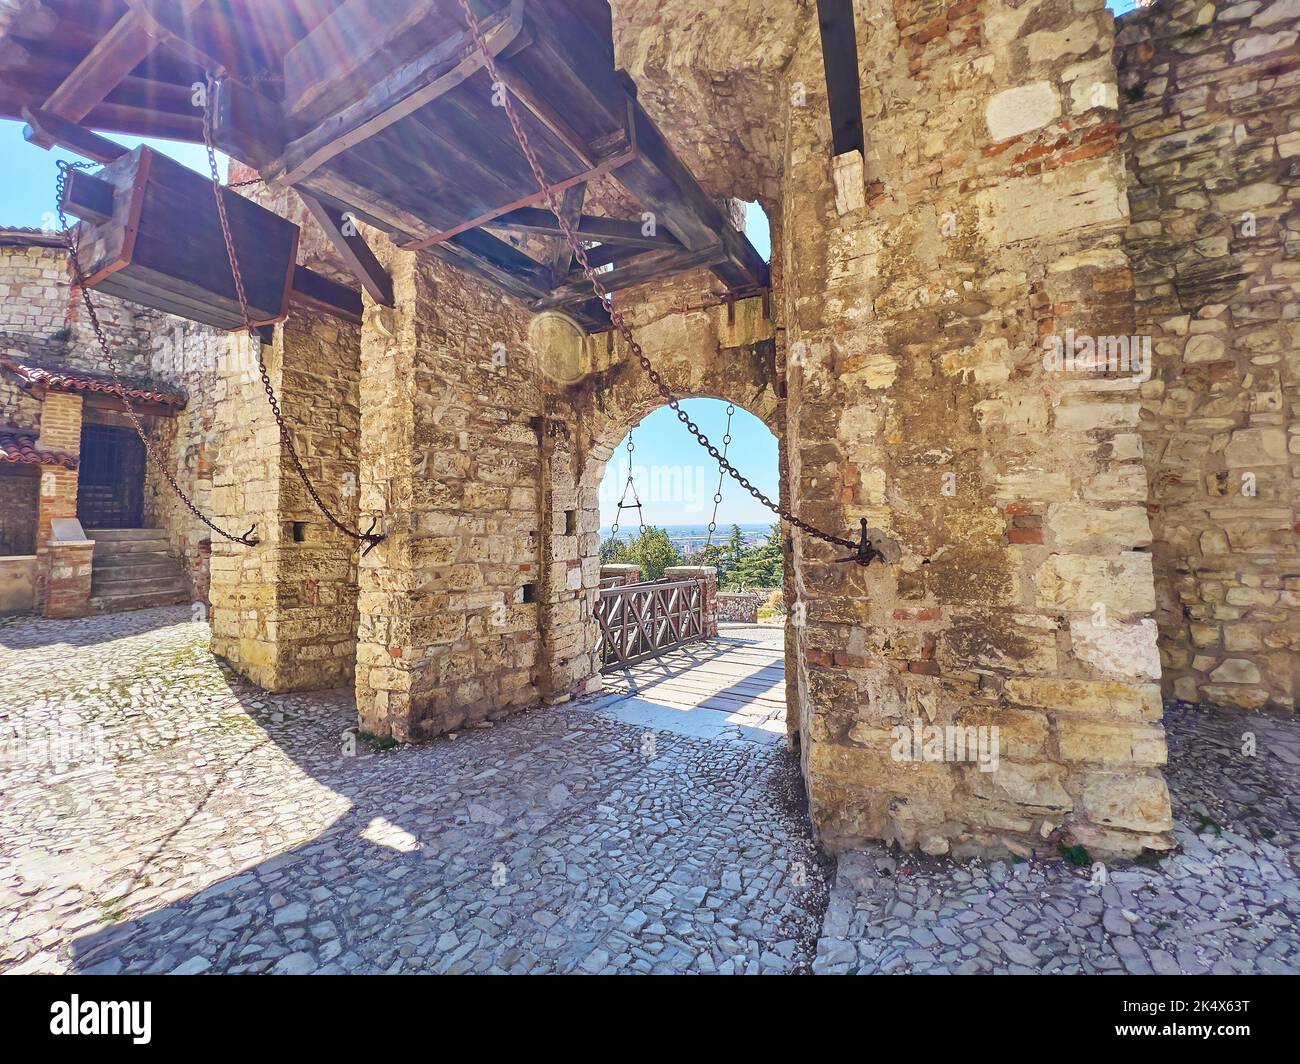 Histórico castillo de Brescia con cancha de piedra, enorme puerta con detalles de madera y puente de madera detrás del arco de paso, Italia Foto de stock